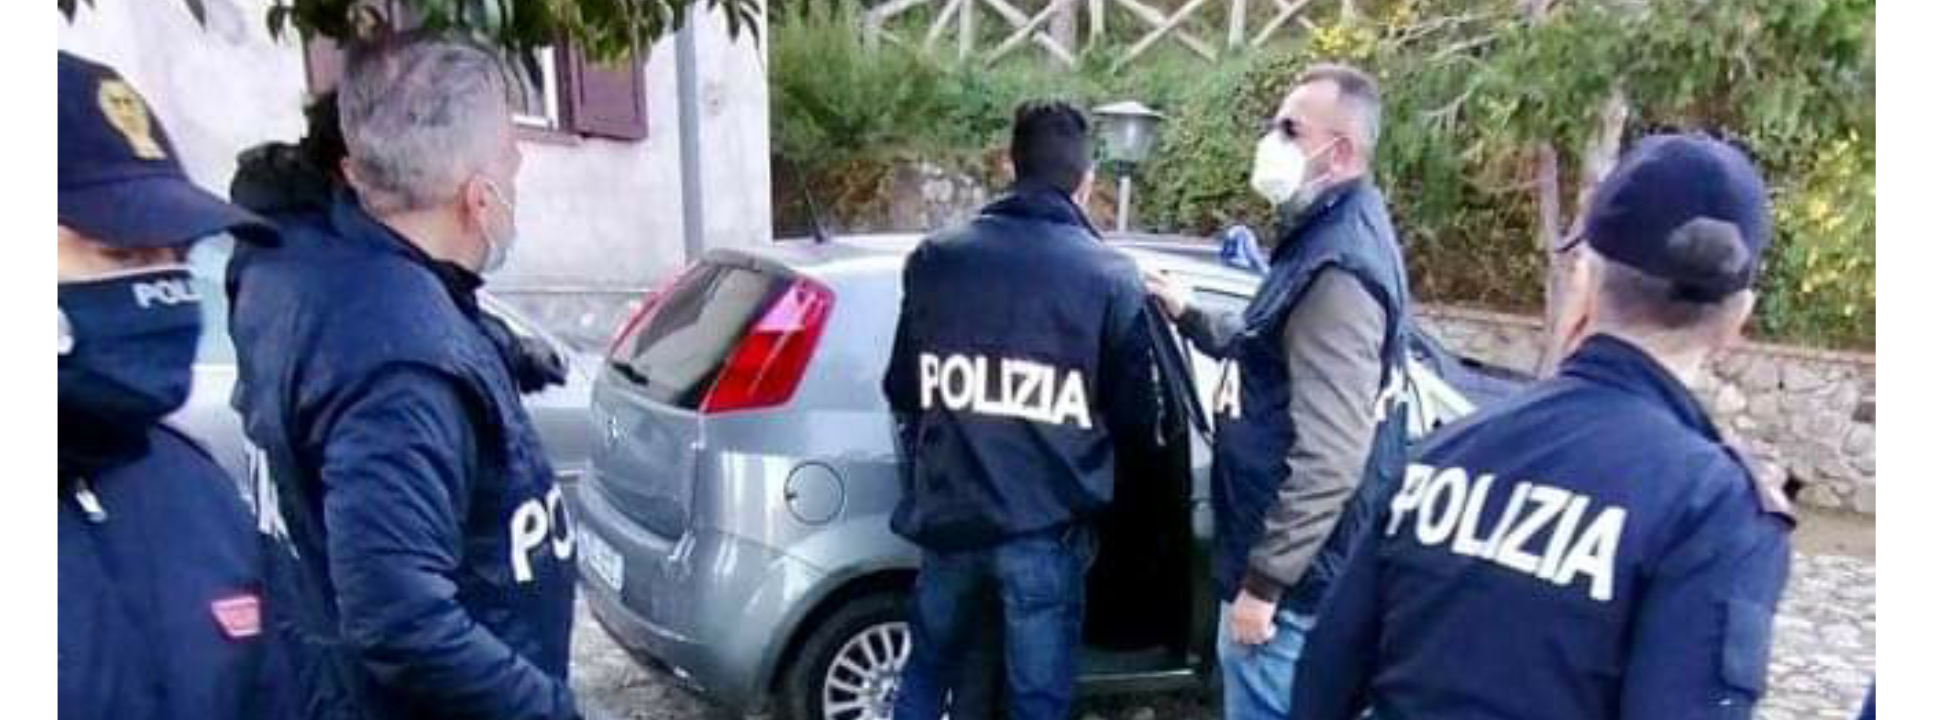 Propaganda jihadista e tutorial per attentati, un arresto a Cosenza ...